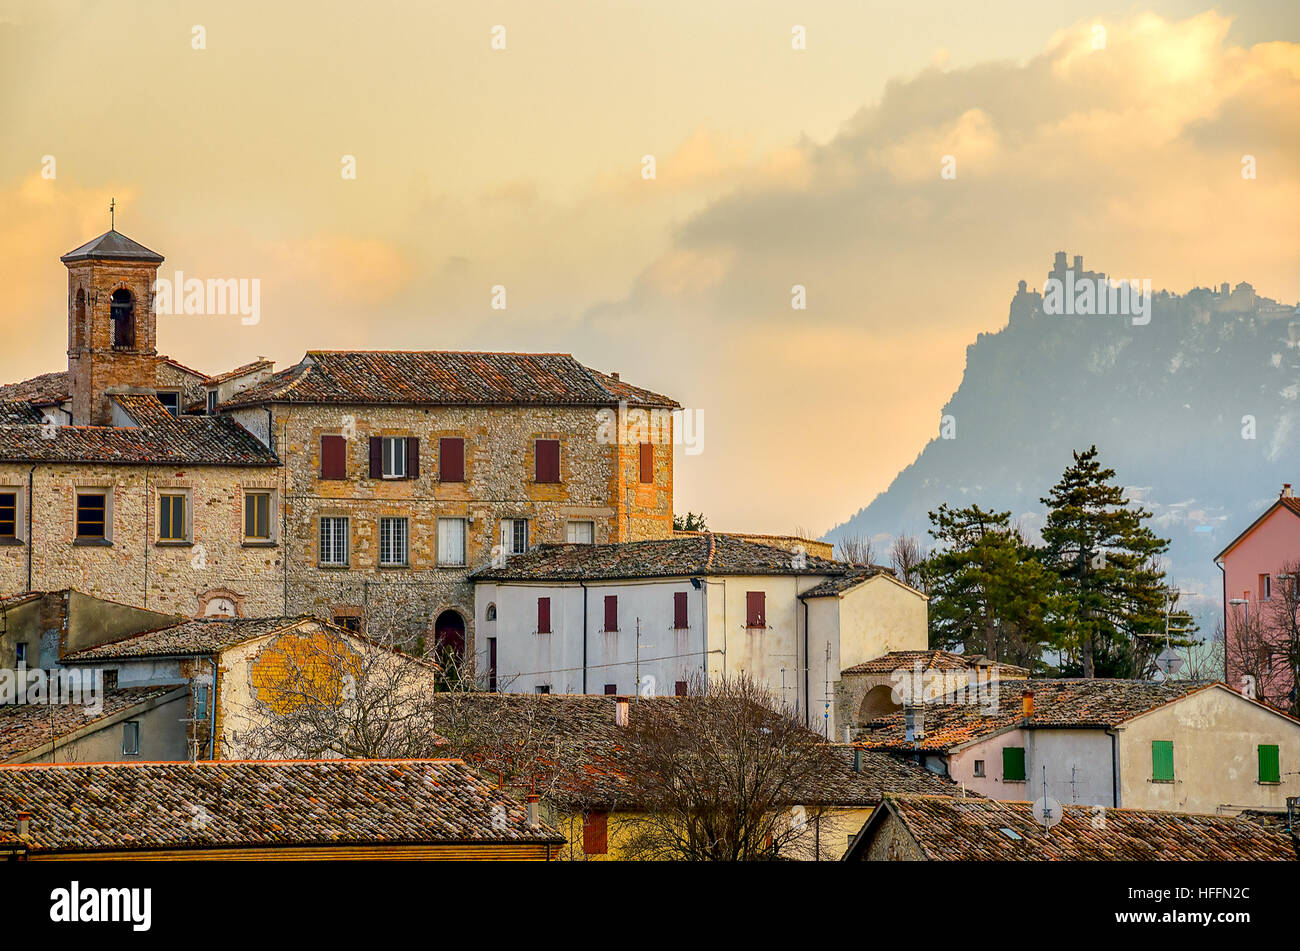 Stadt von Verucchio - Rimini italienisches Dorf Landschaft Emilia Romagna Landschaft Hintergrund Stockfoto